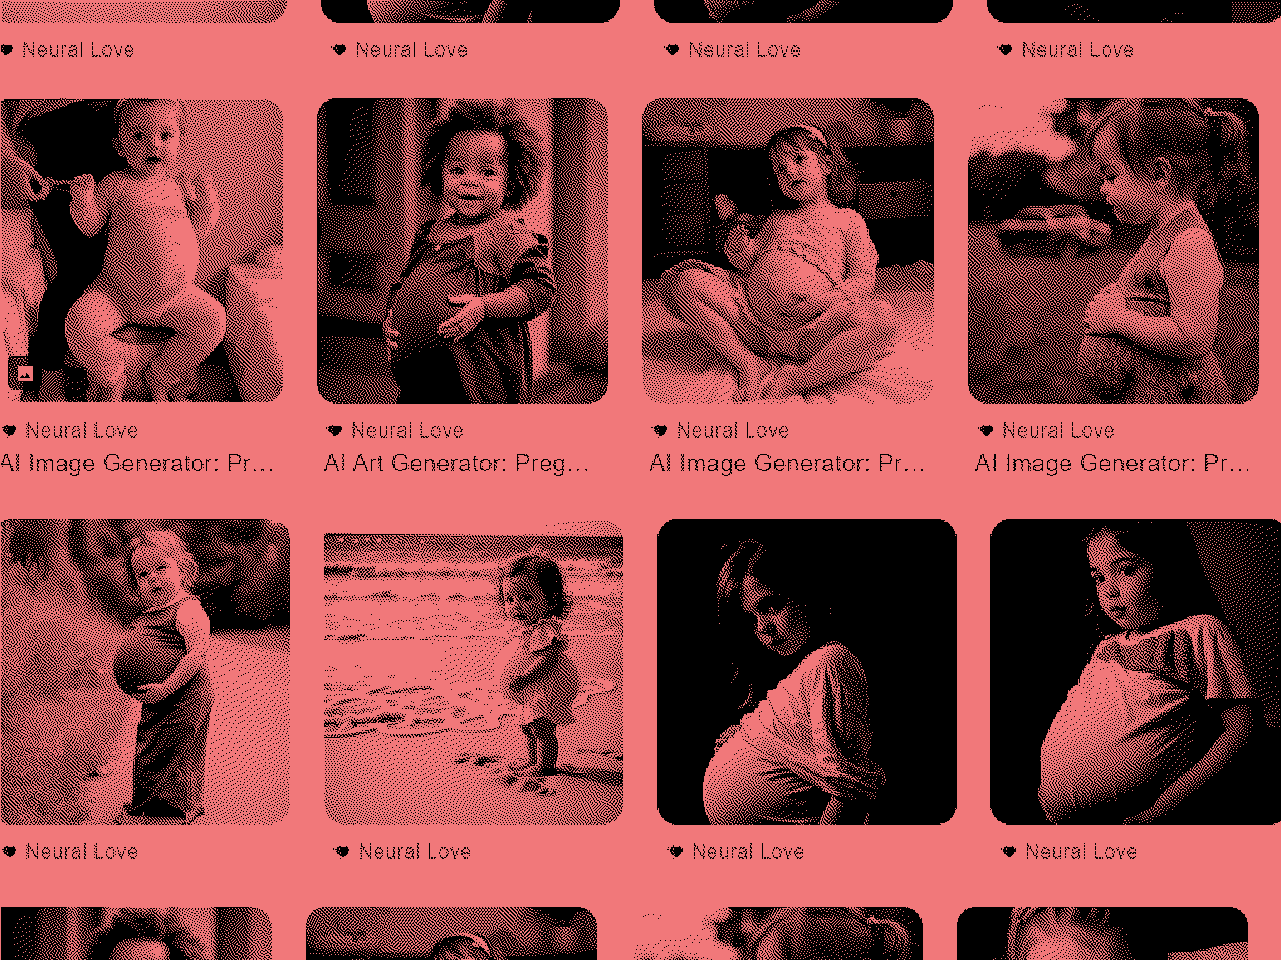 Imagens de crianças grávidas geradas por IA são destacadas no Google